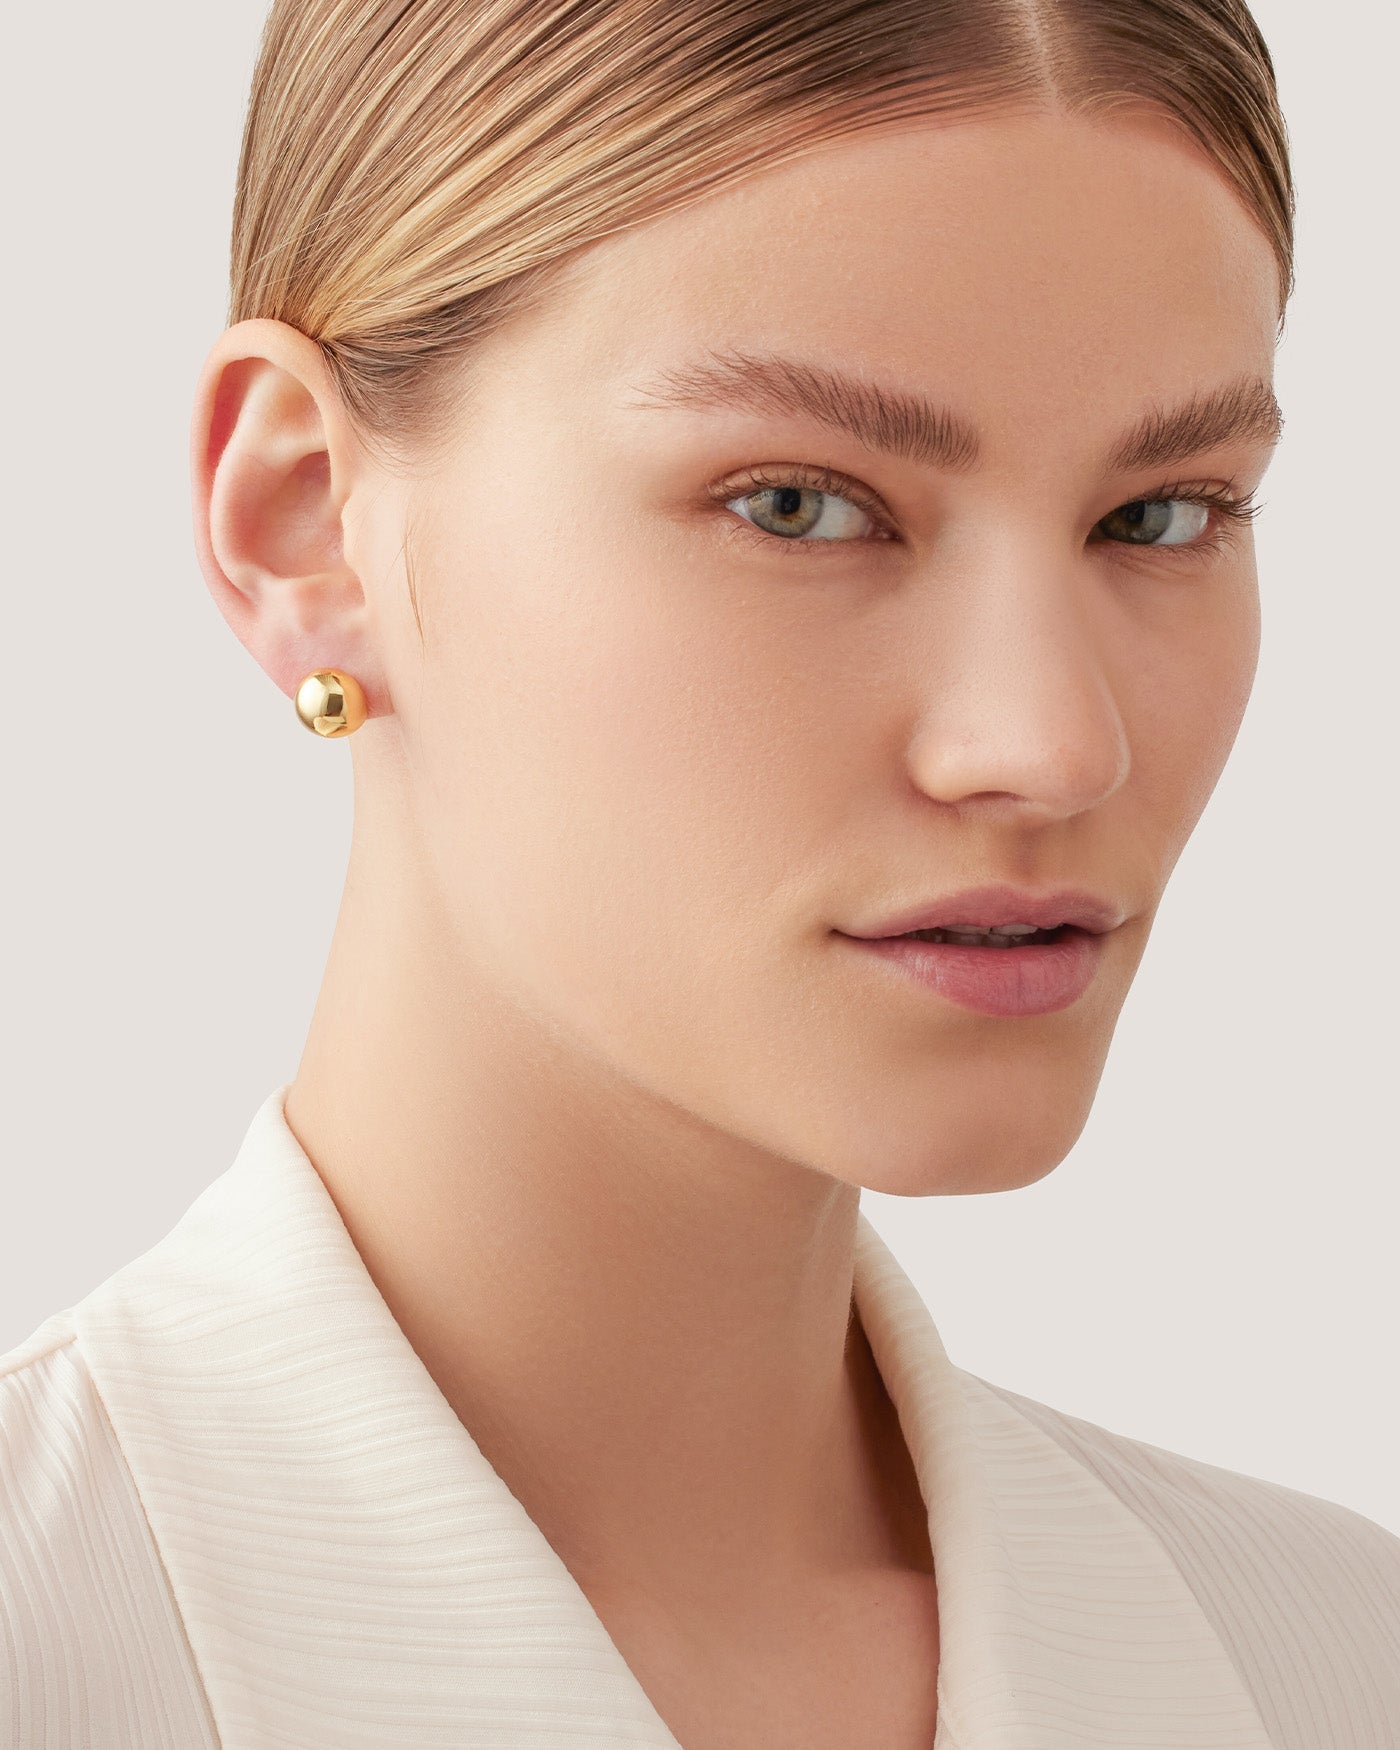 Tiffany HardWear Ball Earrings in Yellow Gold, 8 mm